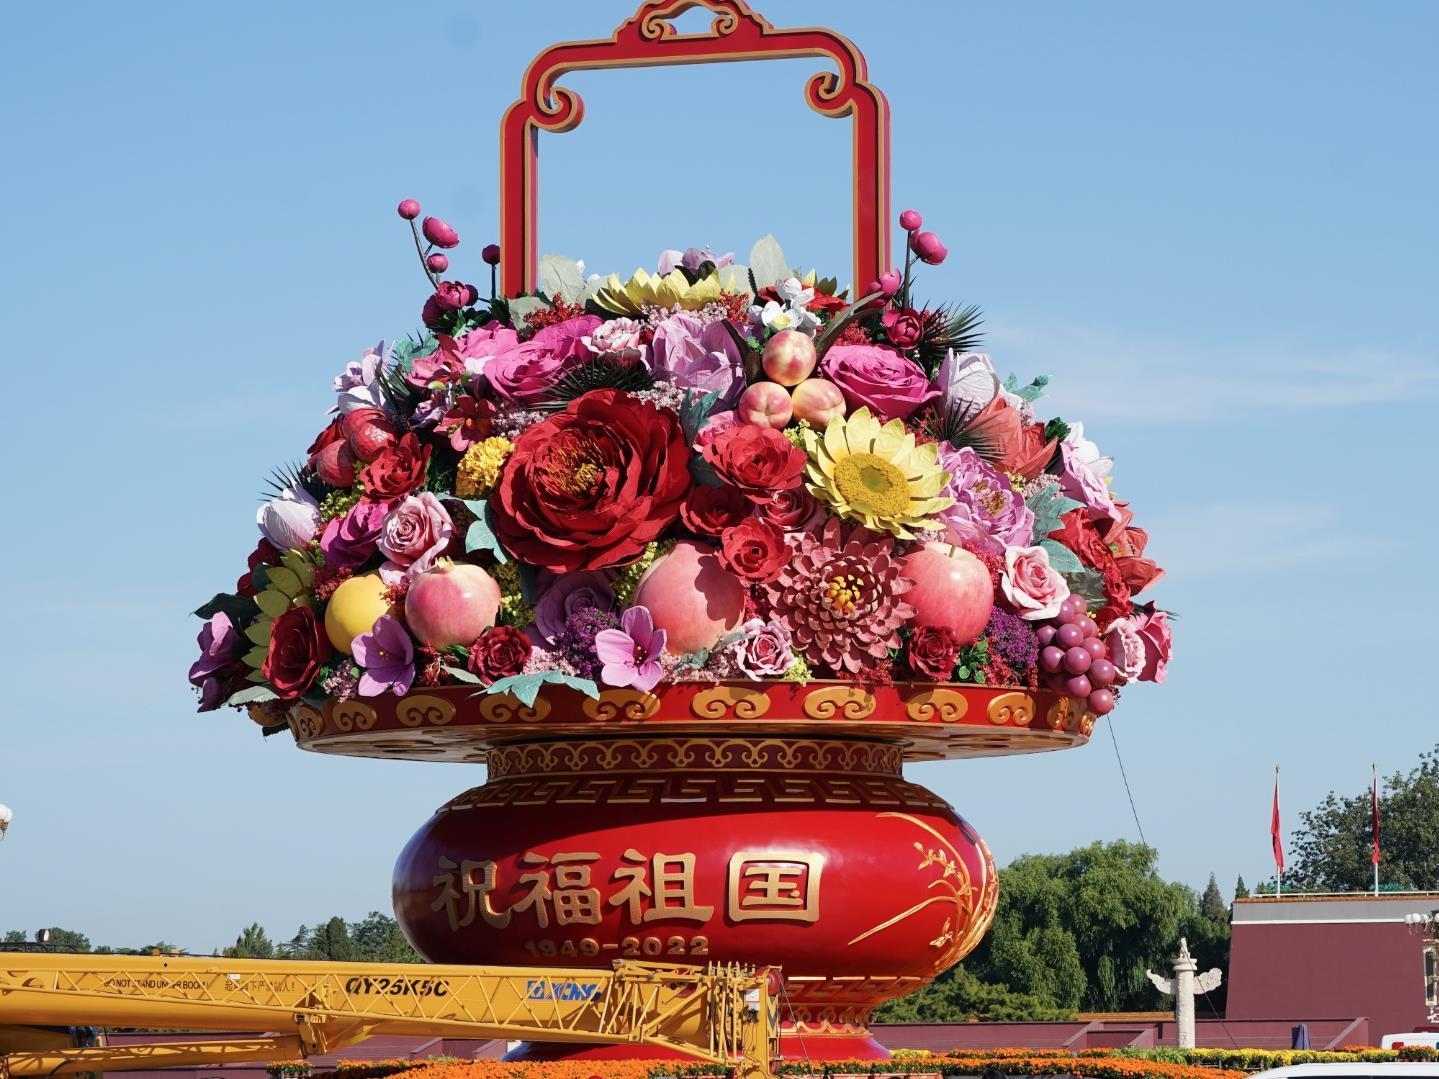 天安门广场“祝福祖国”巨型花果篮组装完毕亮相